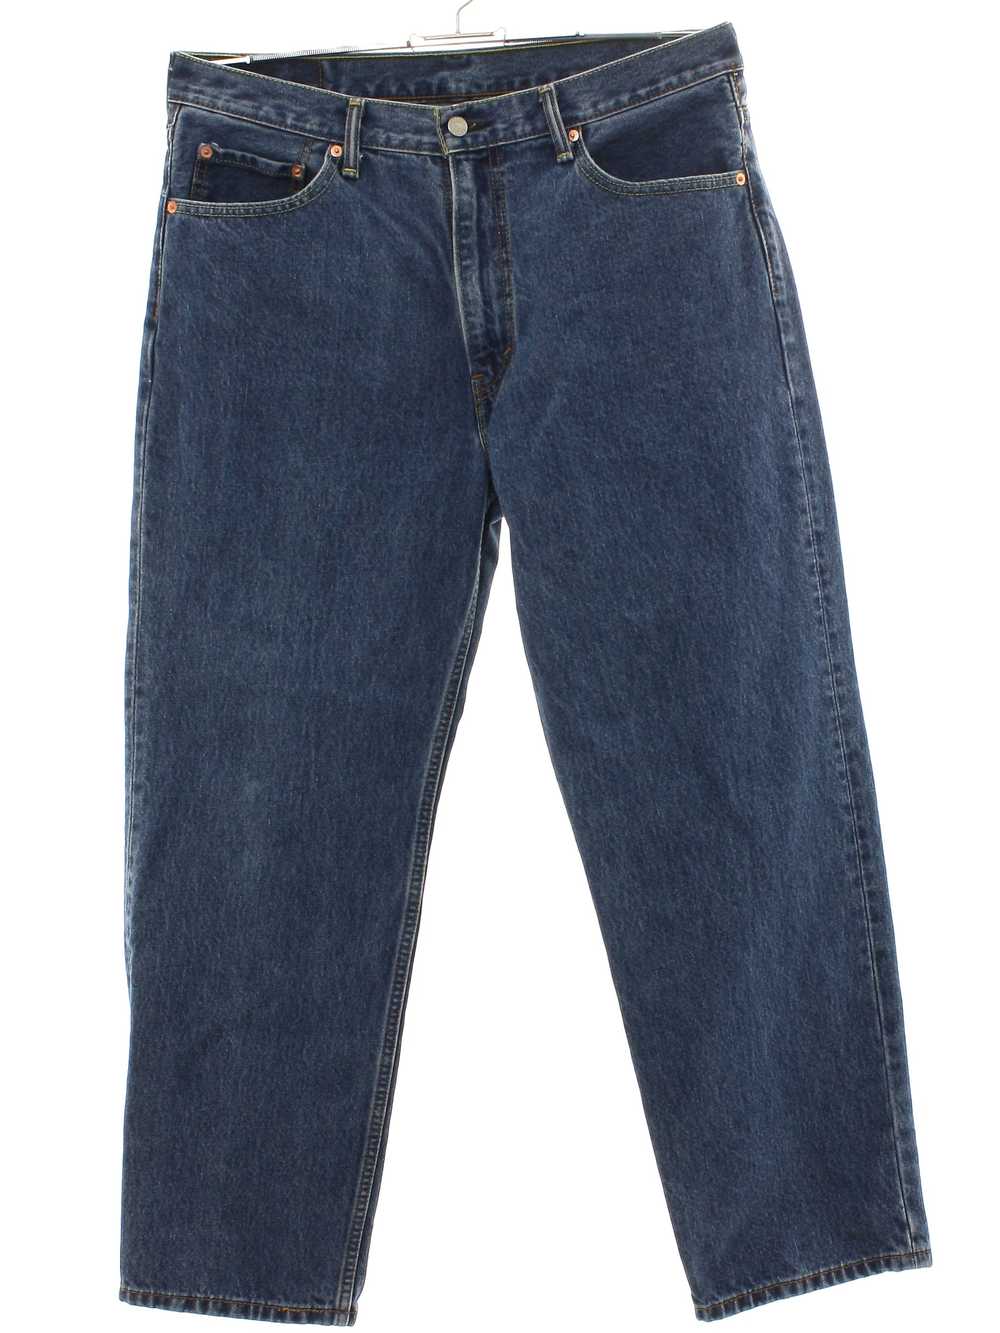 1990's Levis 550 Mens Levis 550s Denim Jeans Pants - image 1